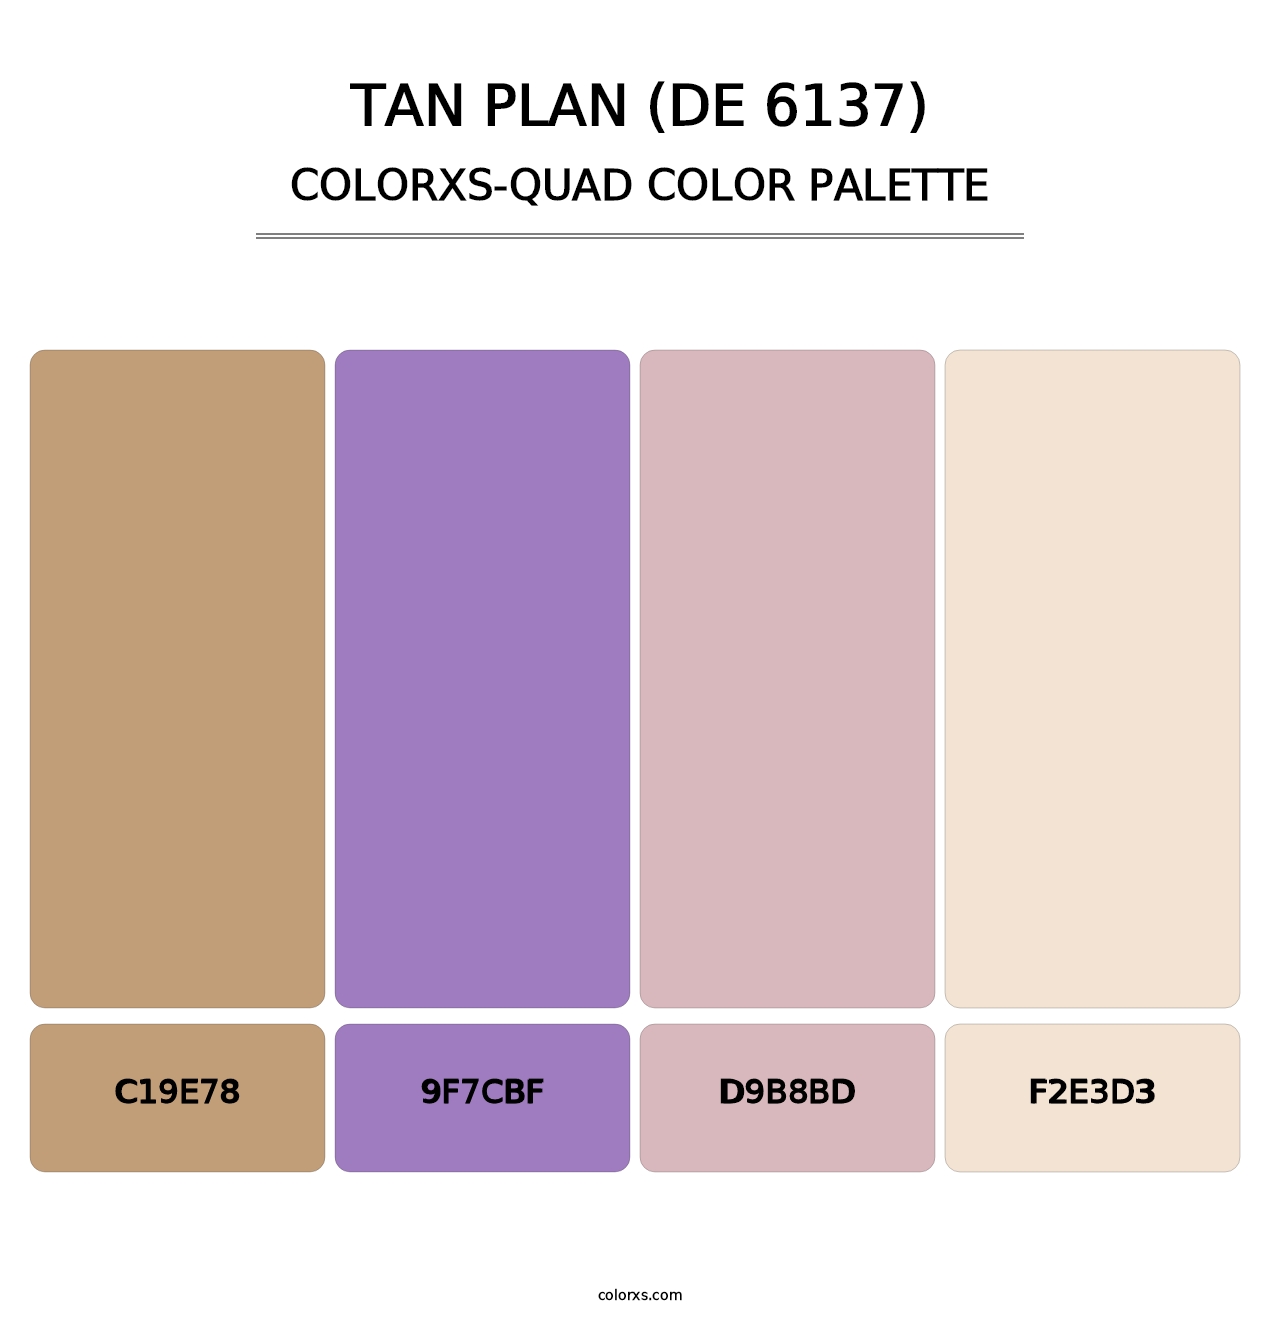 Tan Plan (DE 6137) - Colorxs Quad Palette